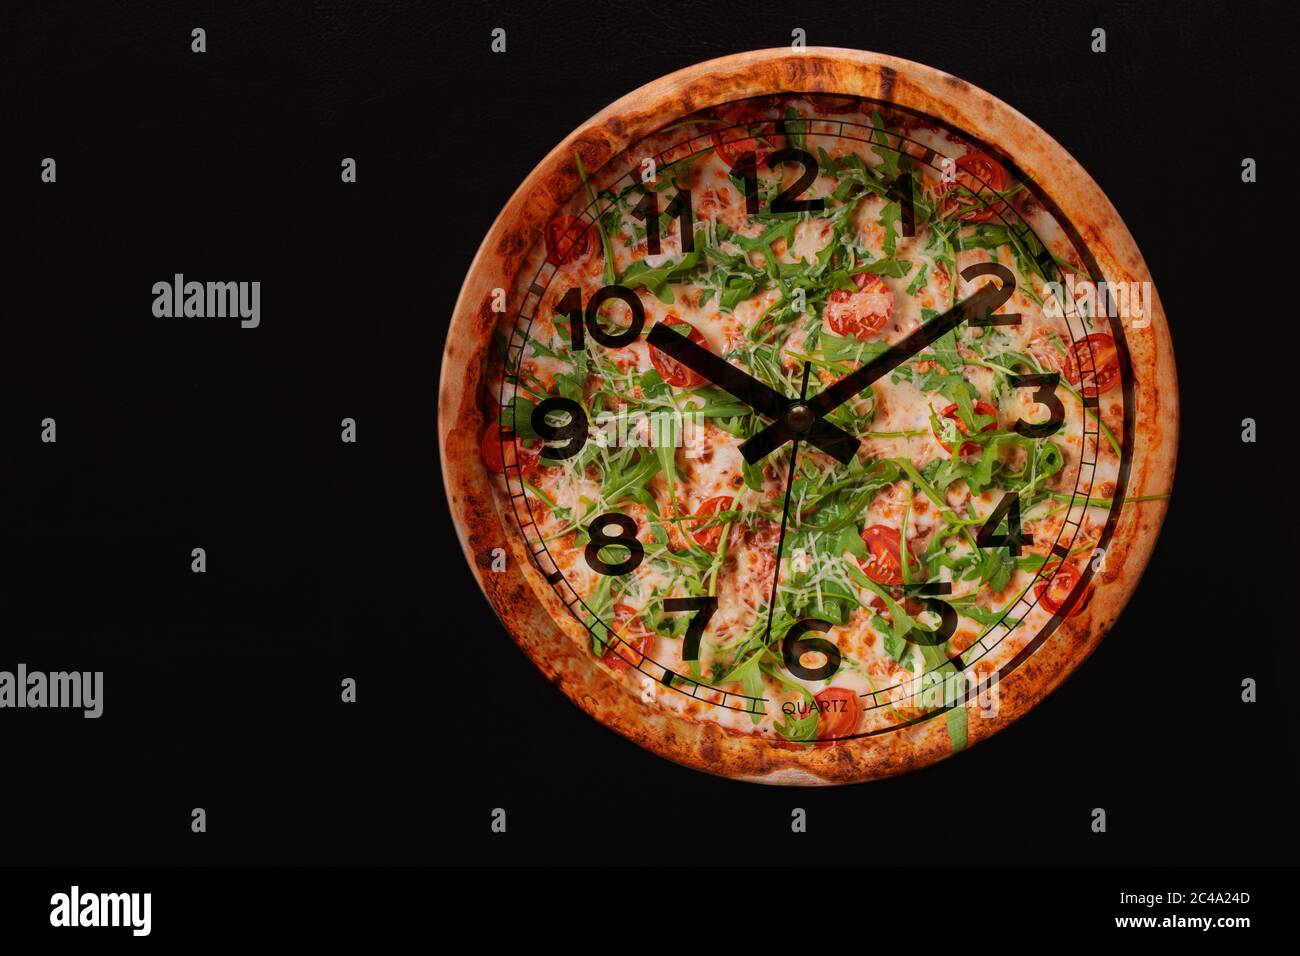 Pizza-Zeit in Form einer Wanduhr auf einem konkreten Hintergrund. Pizza-Uhr.  Für Text platzieren Stockfotografie - Alamy